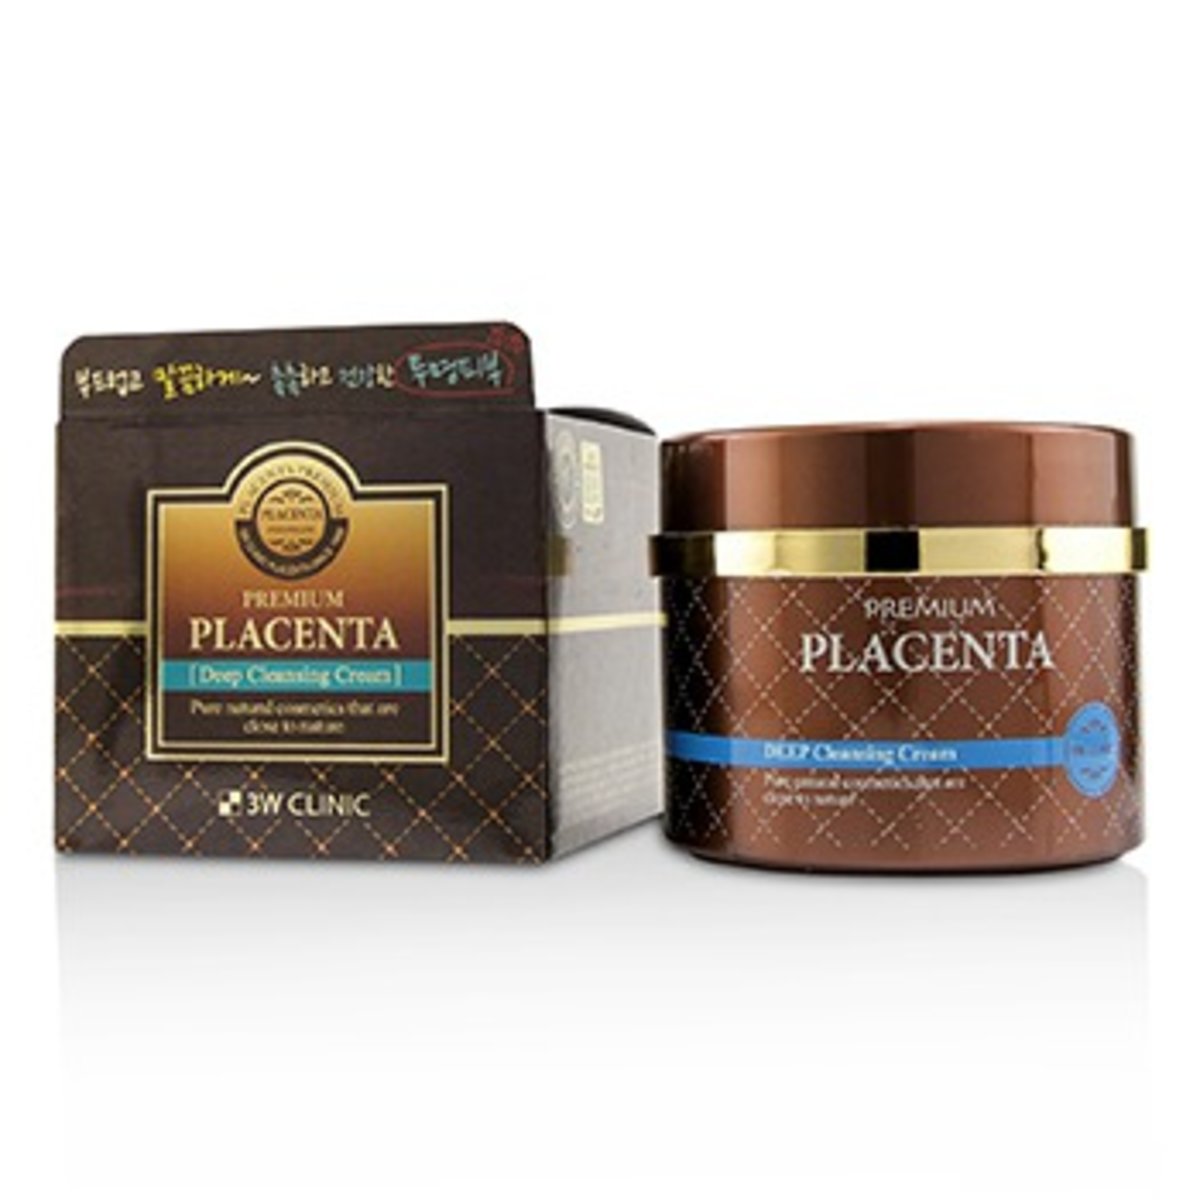 premium placenta cleansing cream 300ml